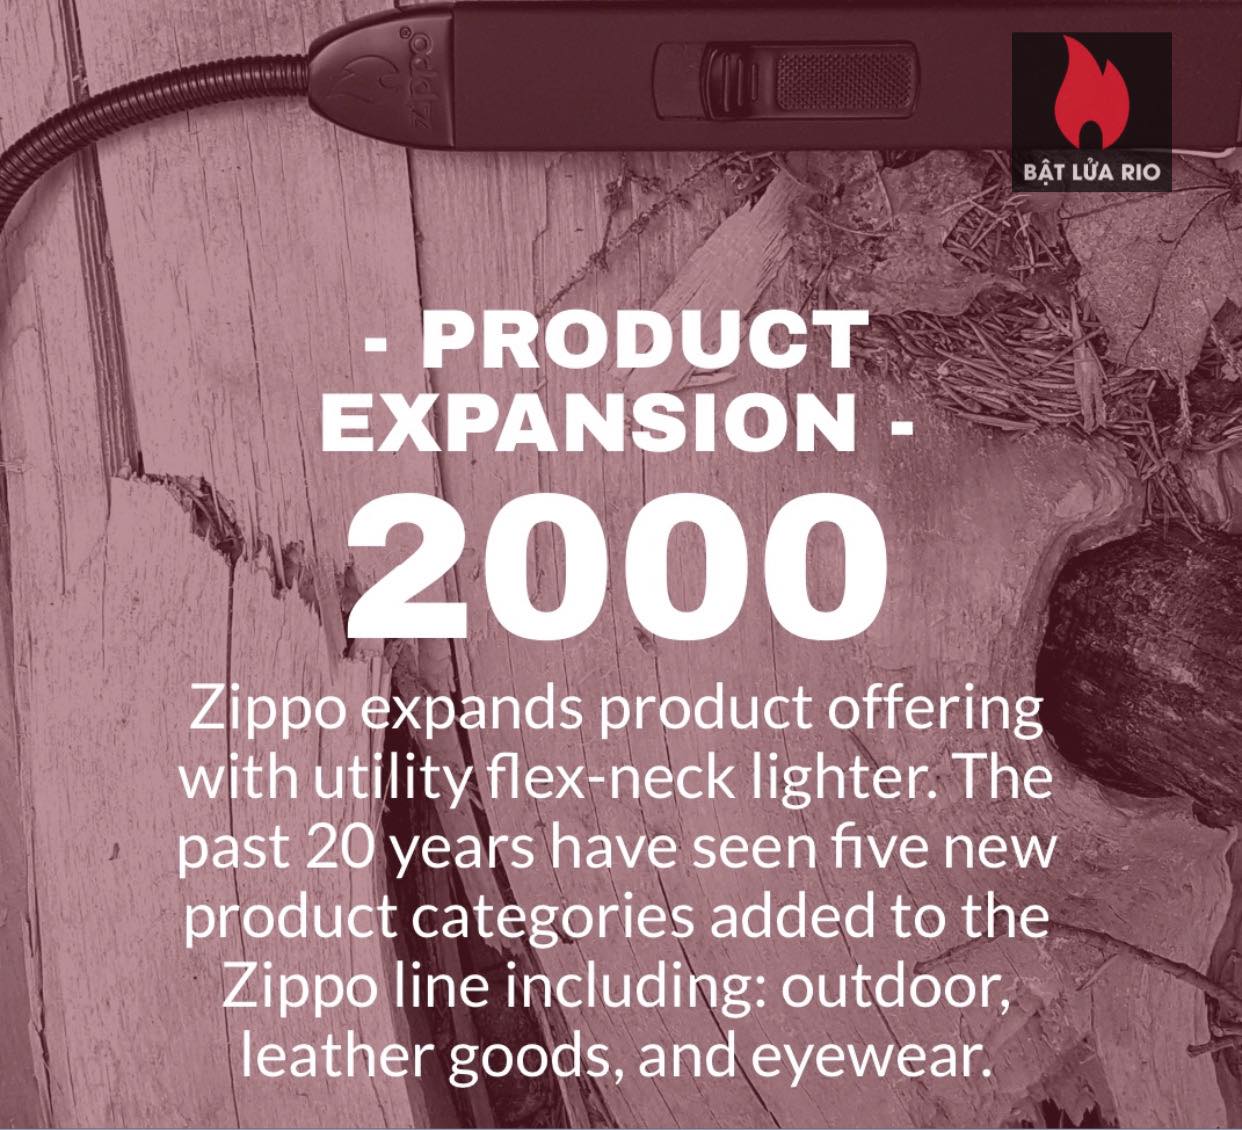 Chiếc bật lửa Zippo thứ 600 triệu trong lịch sử 14